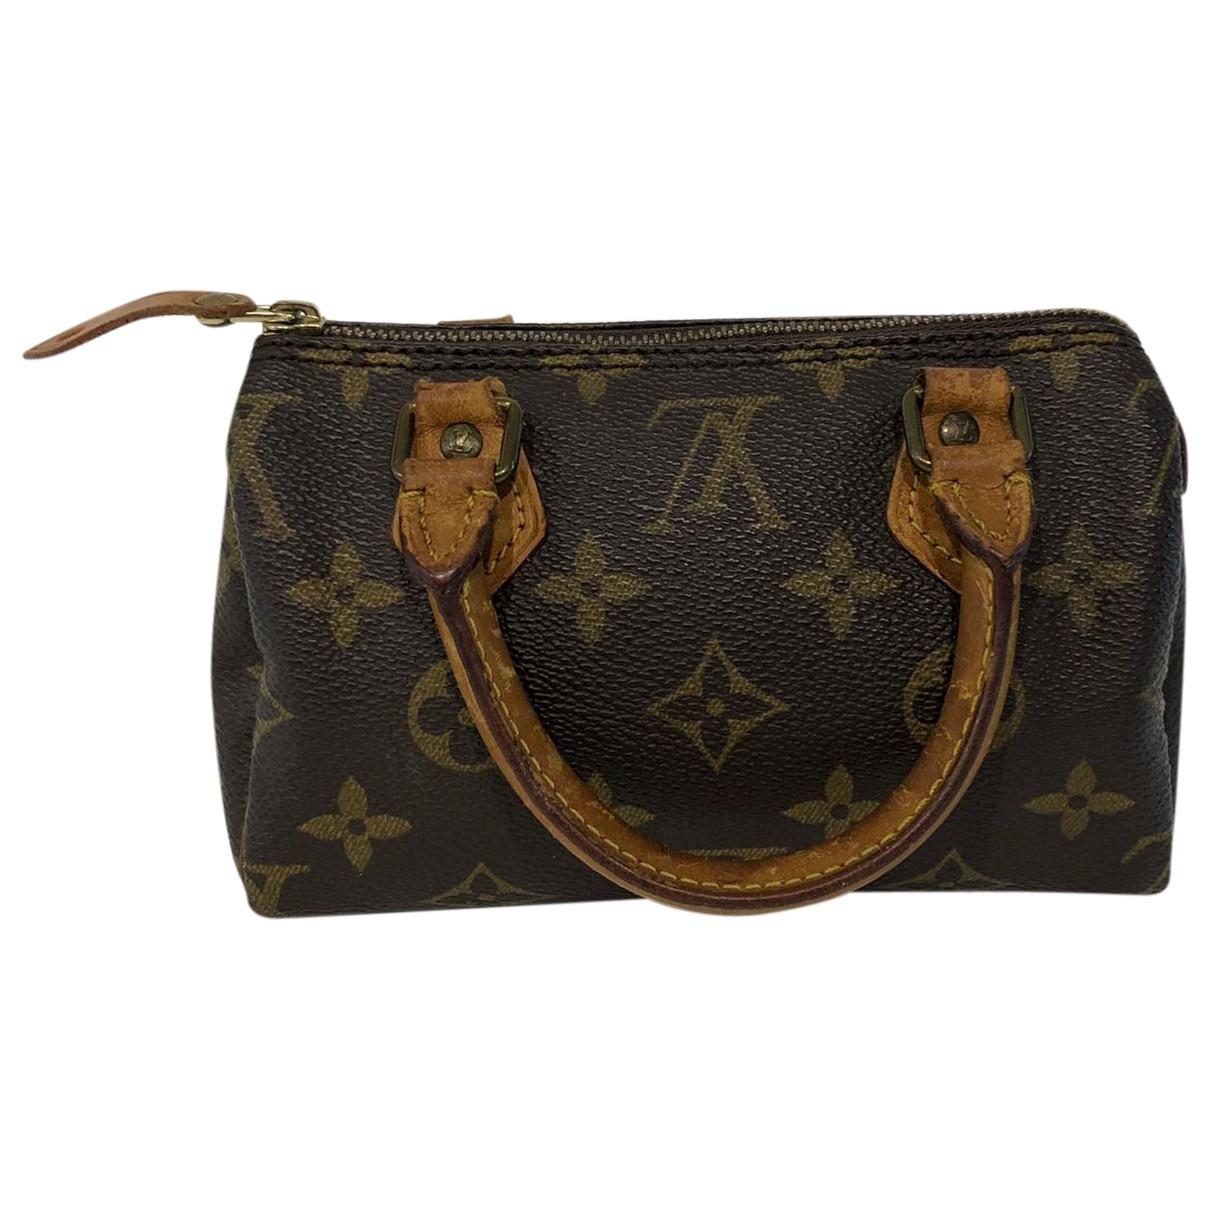 Lyst - Louis Vuitton Vintage Speedy Brown Cloth Handbag in Brown